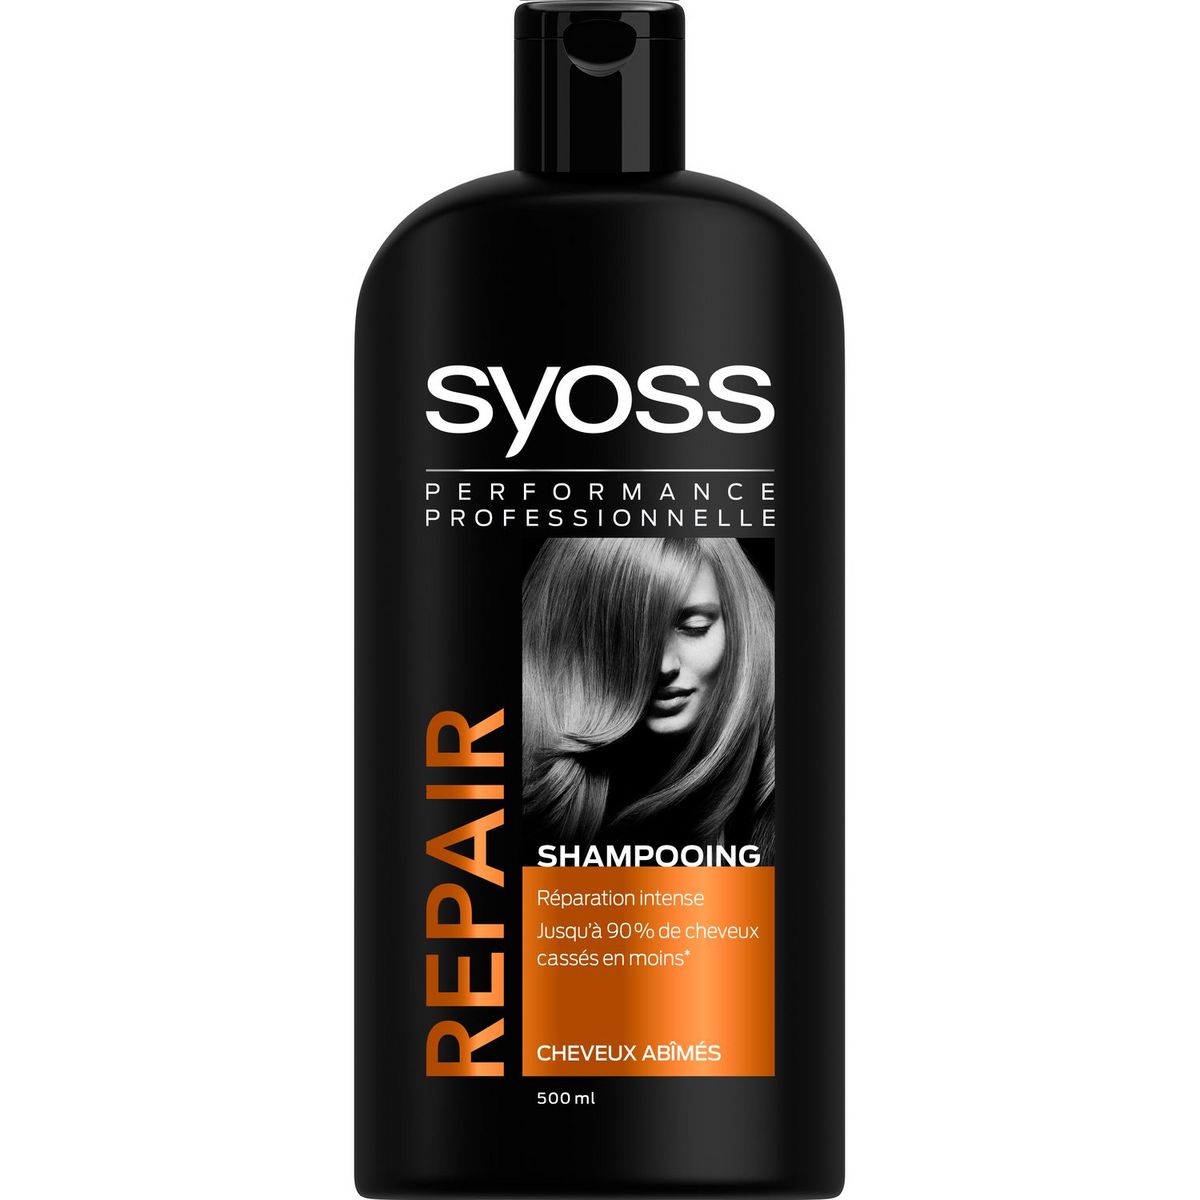 Saint Algue shampoo syoss repair expert 500ml